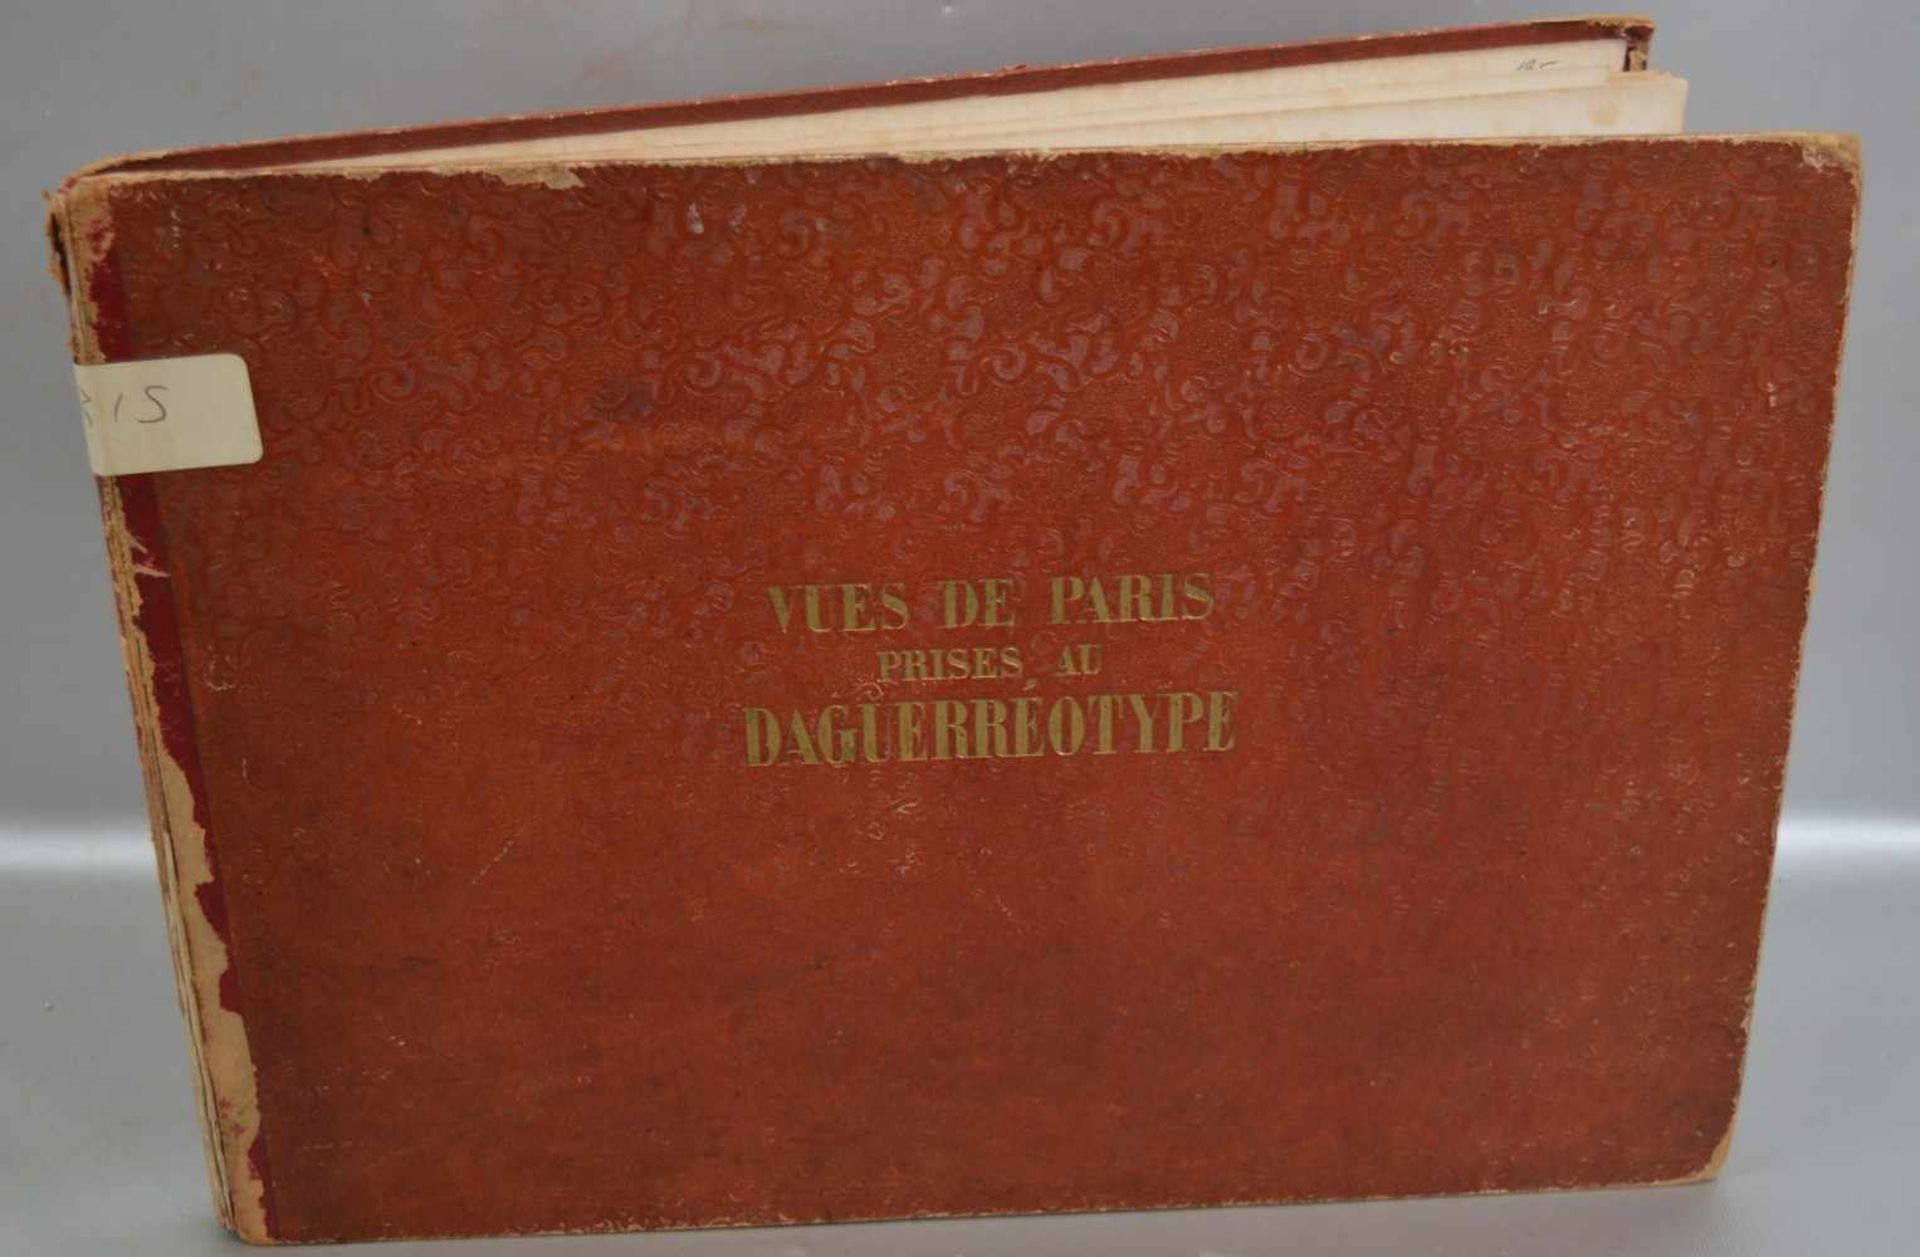 Ansichten von Paris 25 Daguerreotypien (Fotografie-Verfahren des 19. Jh.) mit Ansichten von